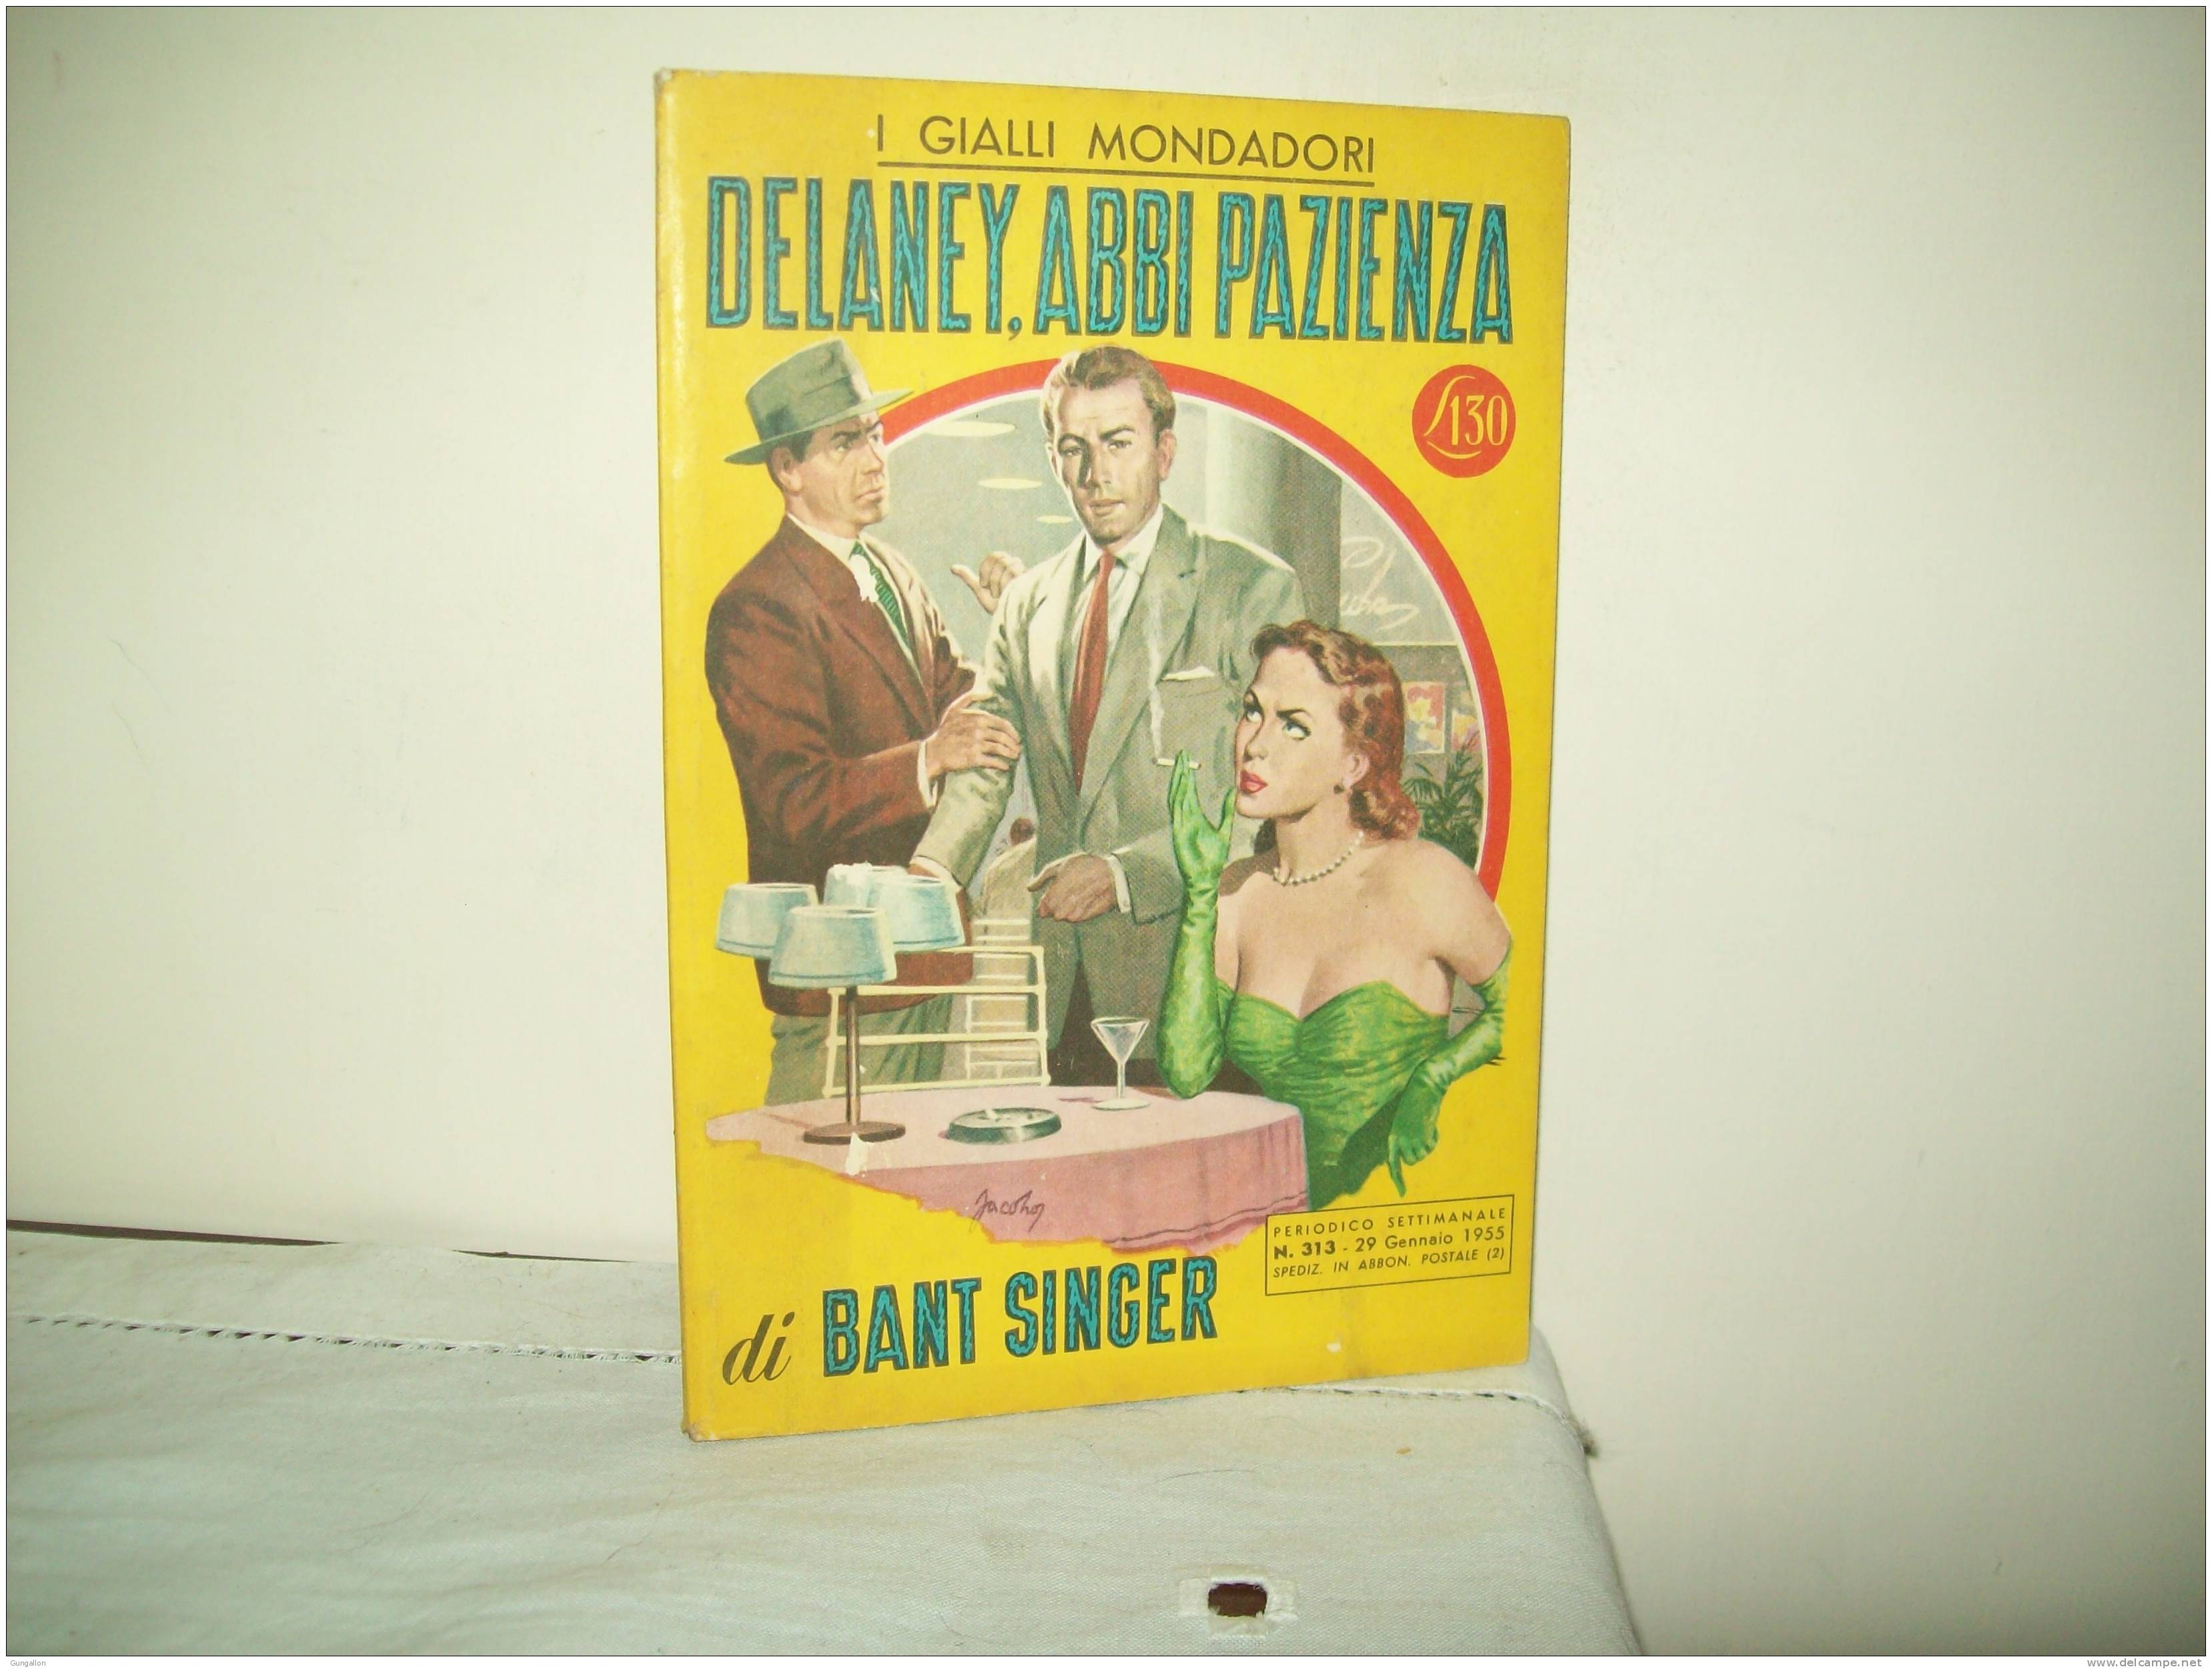 I Gialli Mondadori (Mondadori 1955)  N. 313  "Delaney Abbi Pazienza"  Di Bant Singer - Thrillers